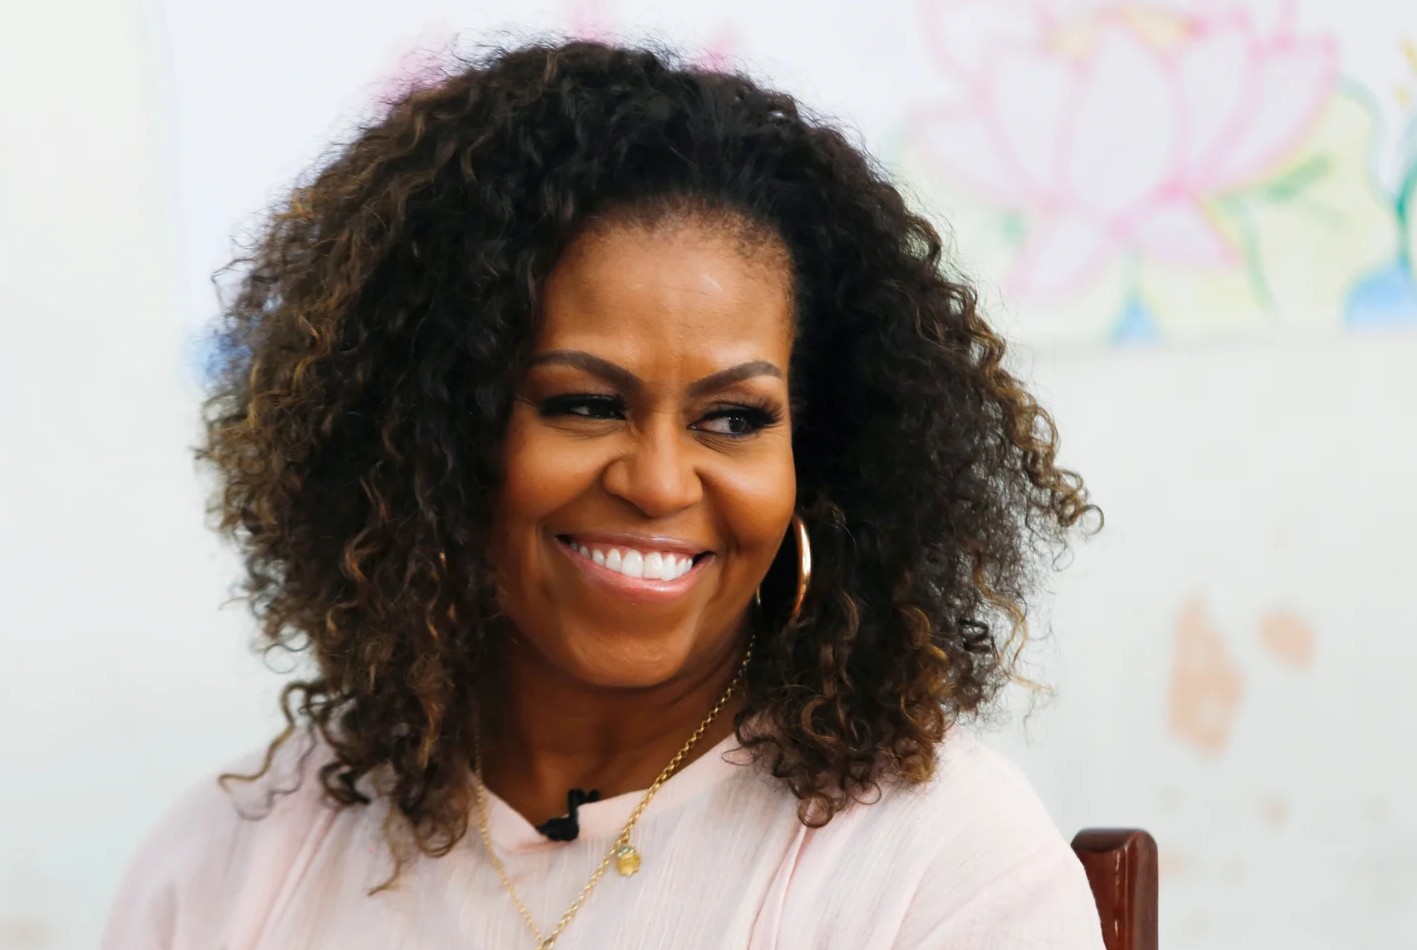 Adelanto exclusivo: Michelle Obama habla de cómo fue dejar la Casa Blanca, sus inseguridades y el lugar de Barack en su nuevo libro, “Con luz propia”